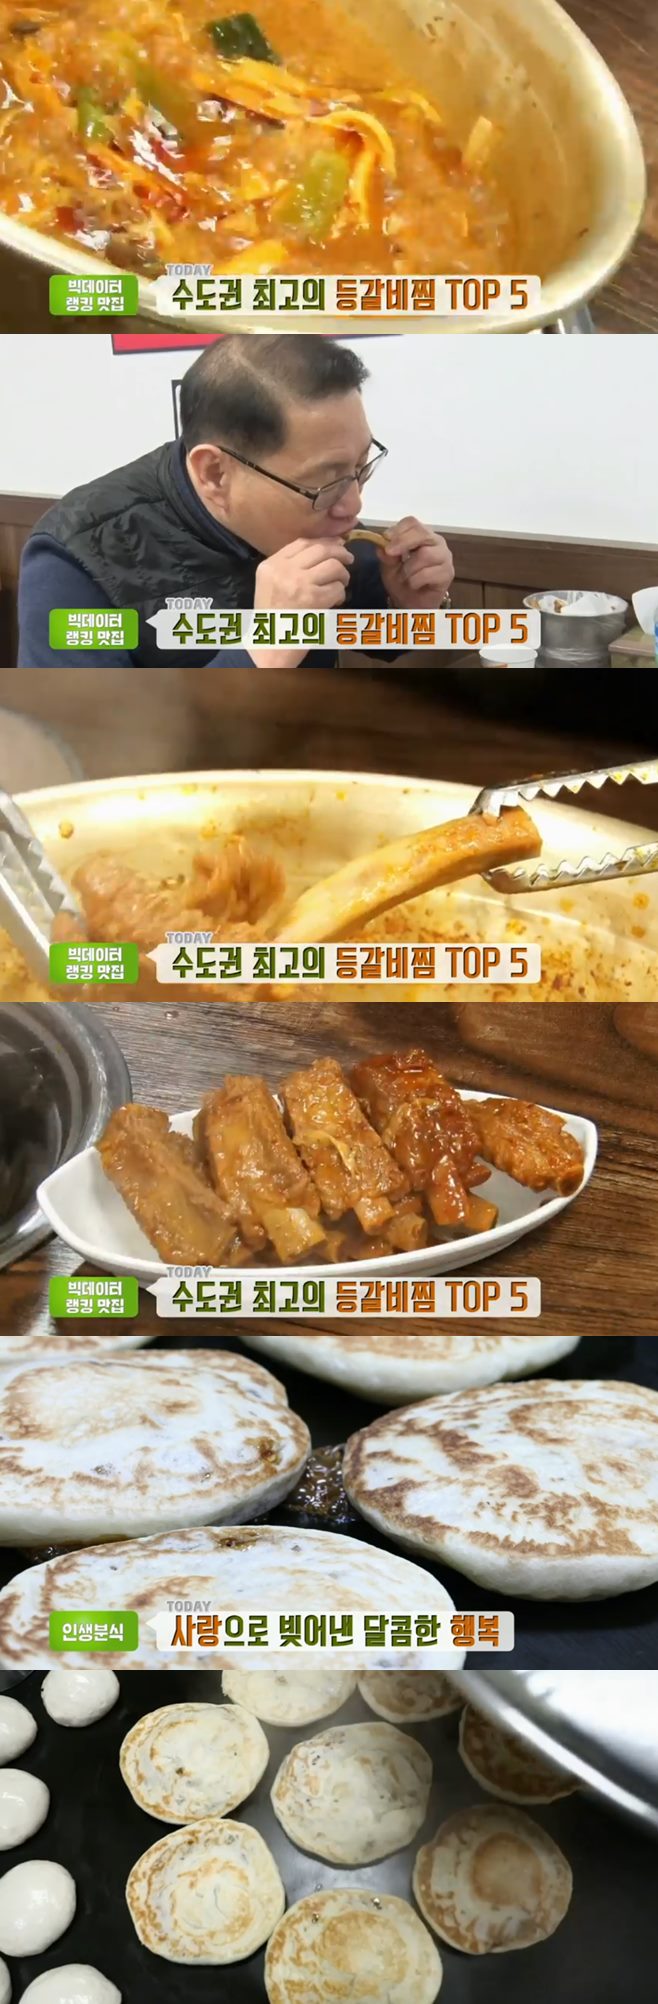 ‘생방송투데이’ 등갈비찜(성원식당)+우리동네반찬가게(맛있는식탁)+호떡(아호땅호떡) 맛집